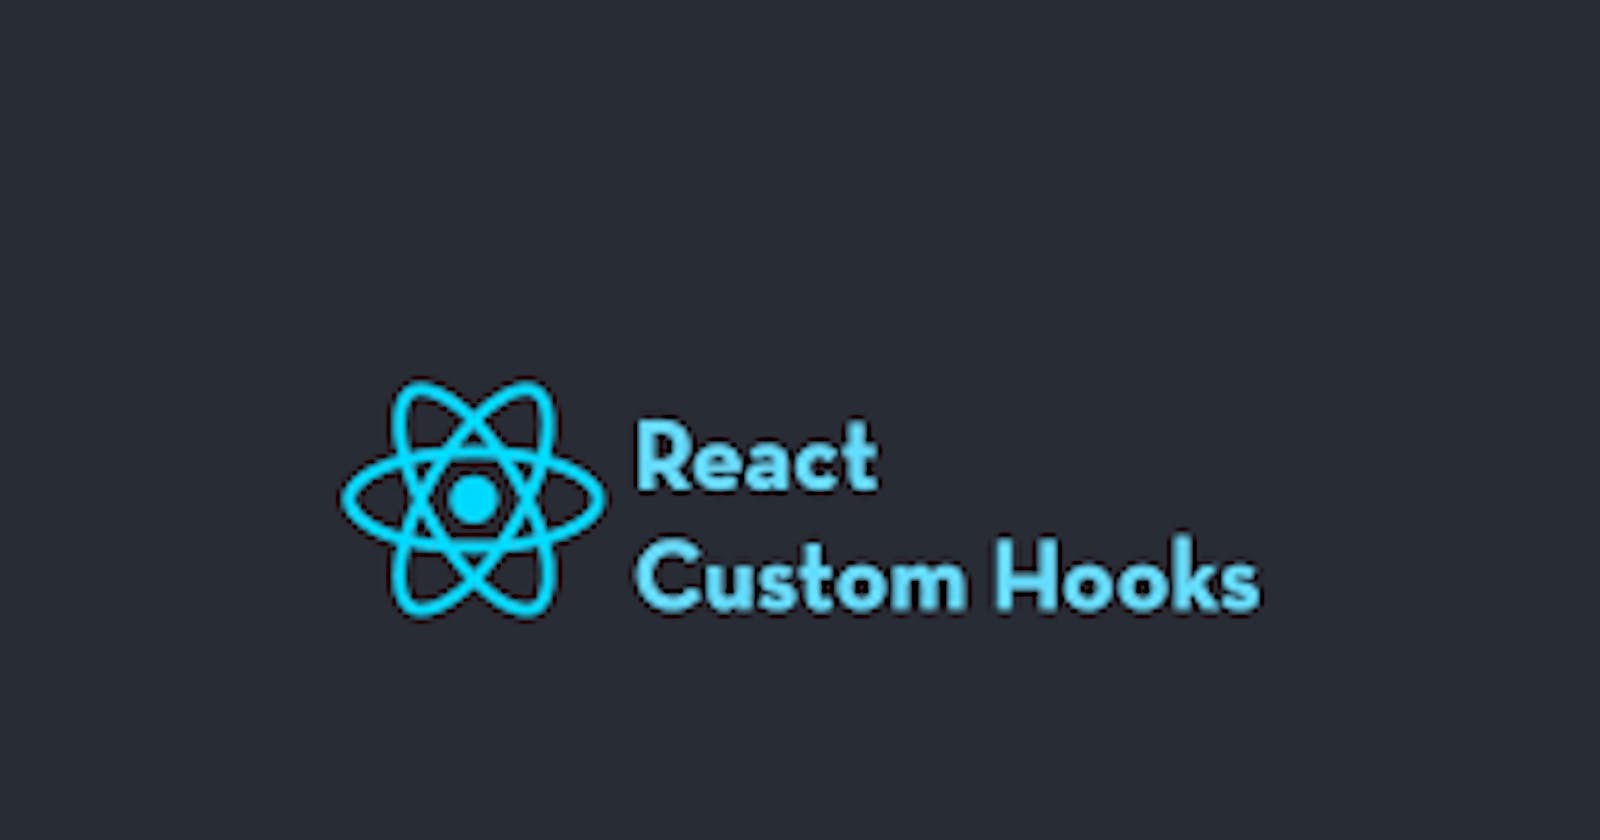 React Custom Hooks -> Make your own custom hook.